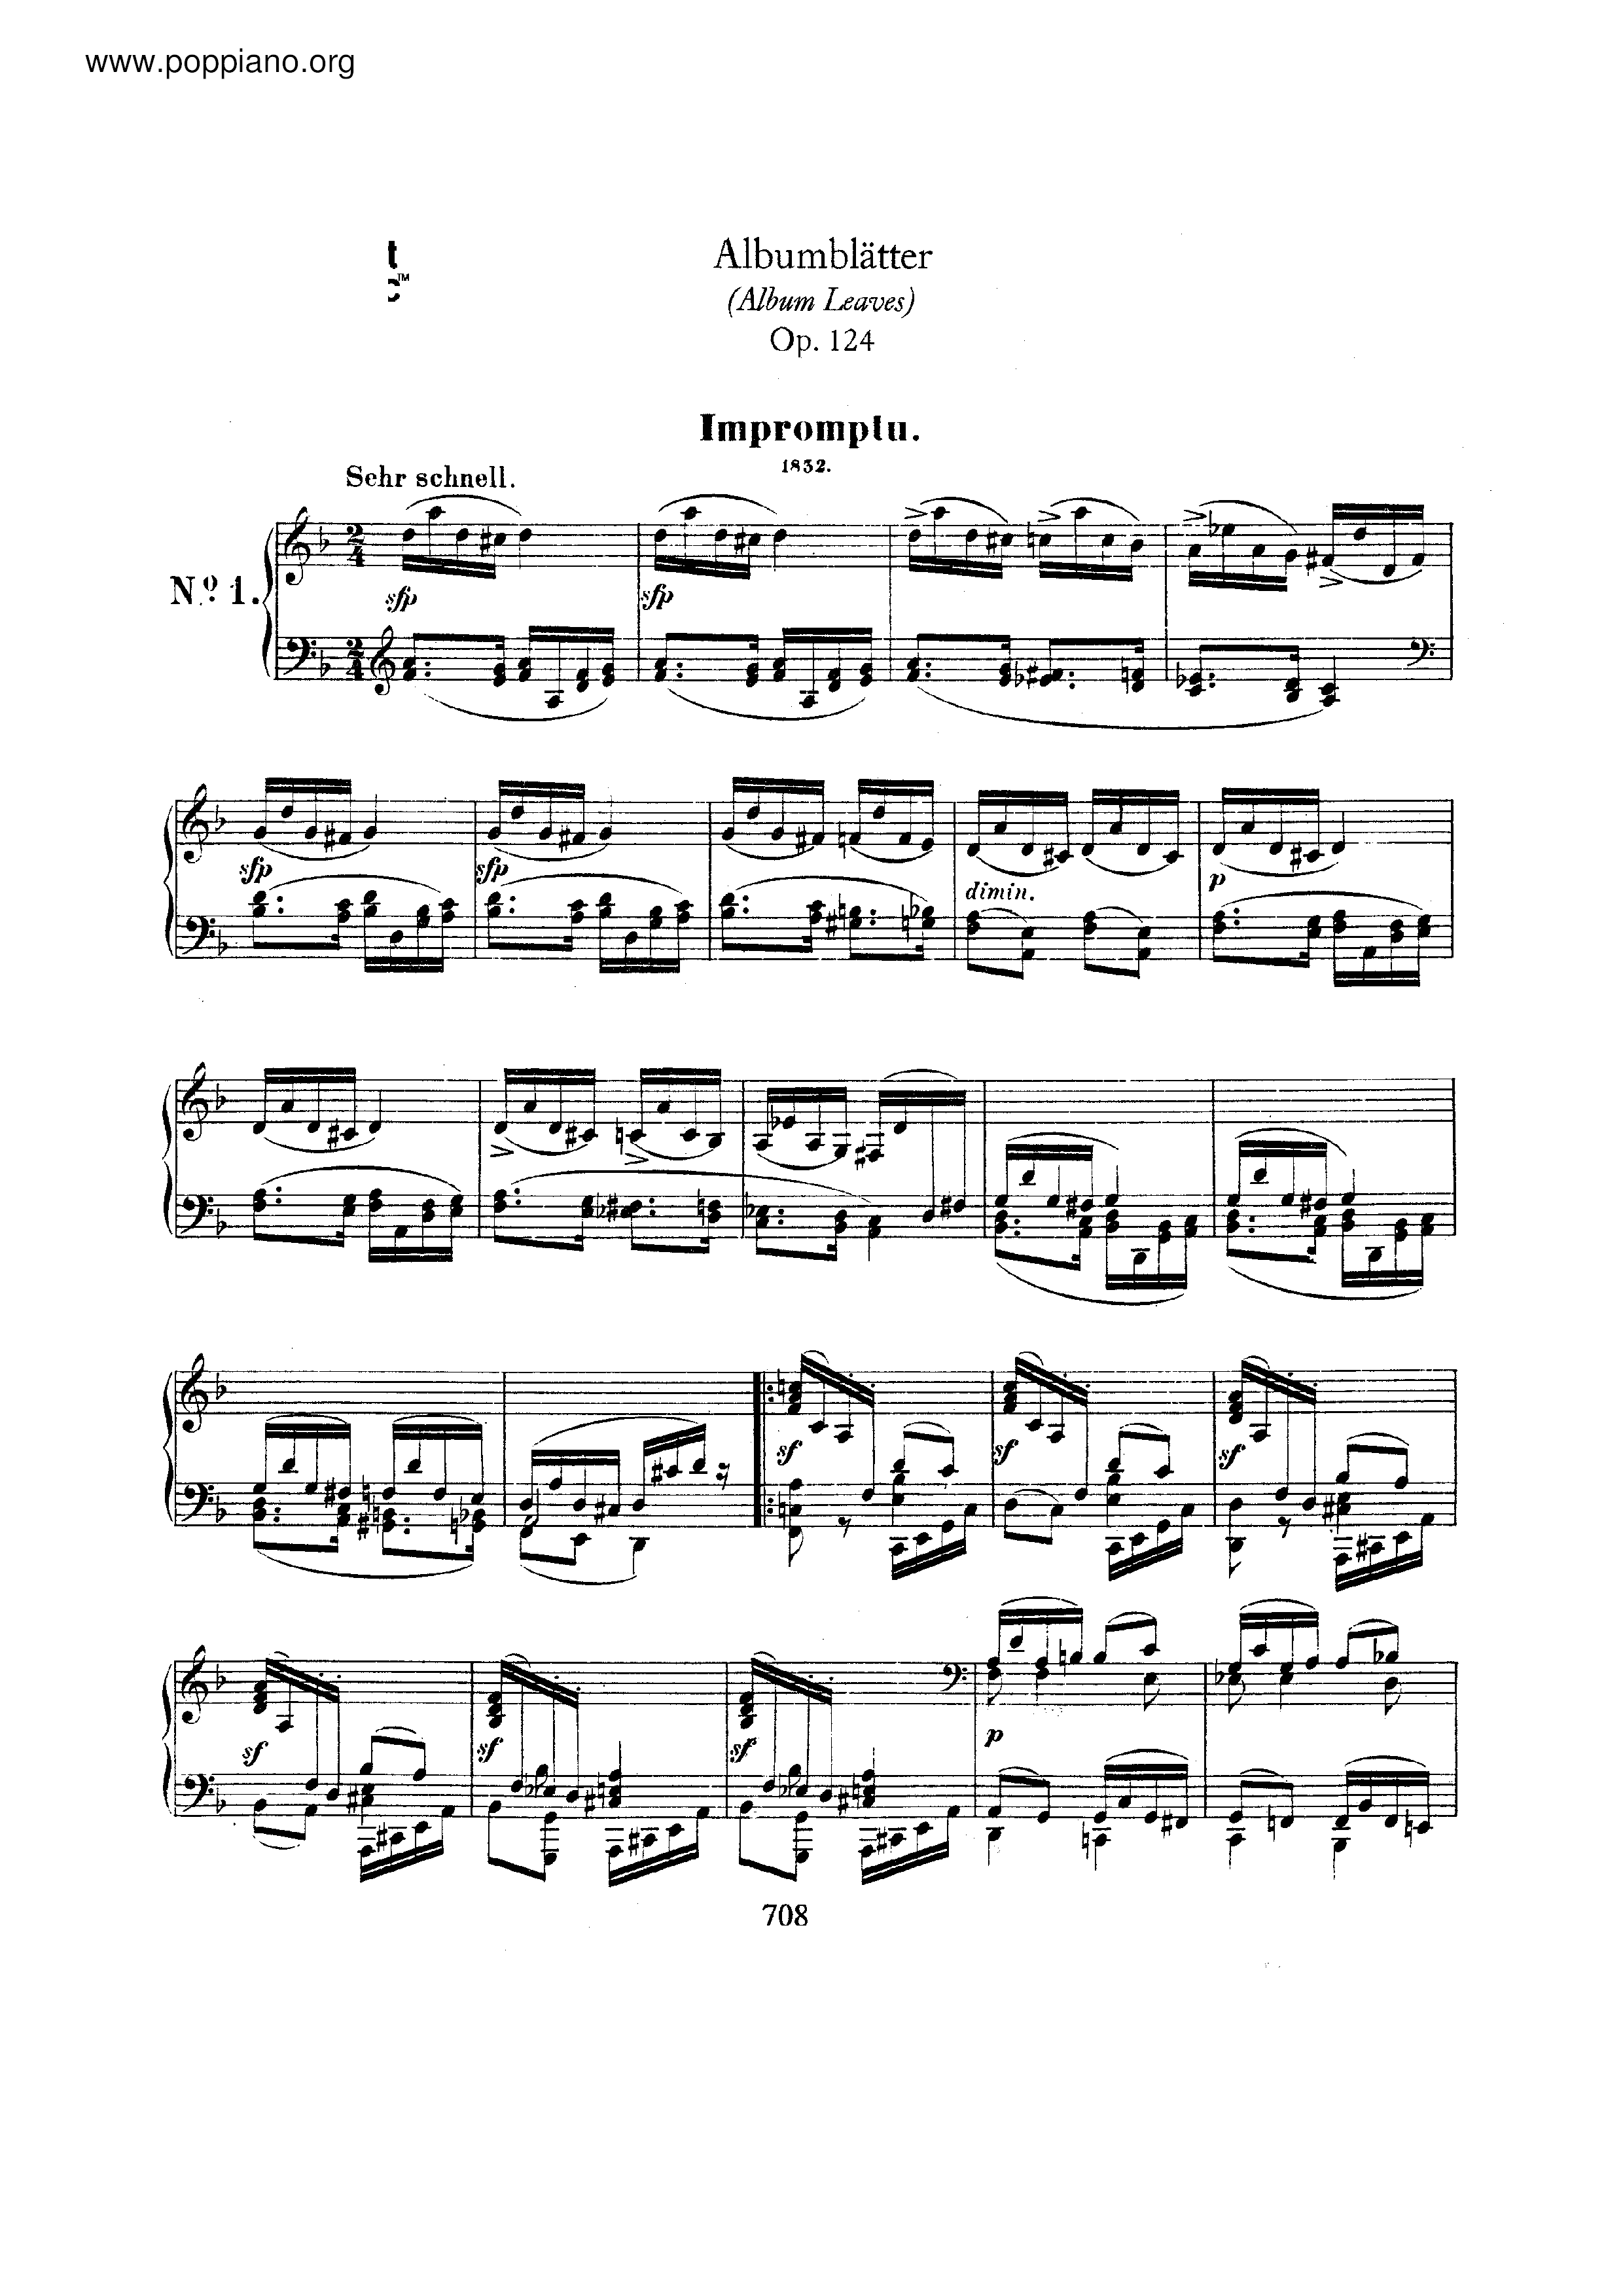 Albumblatter, Op.124 Score